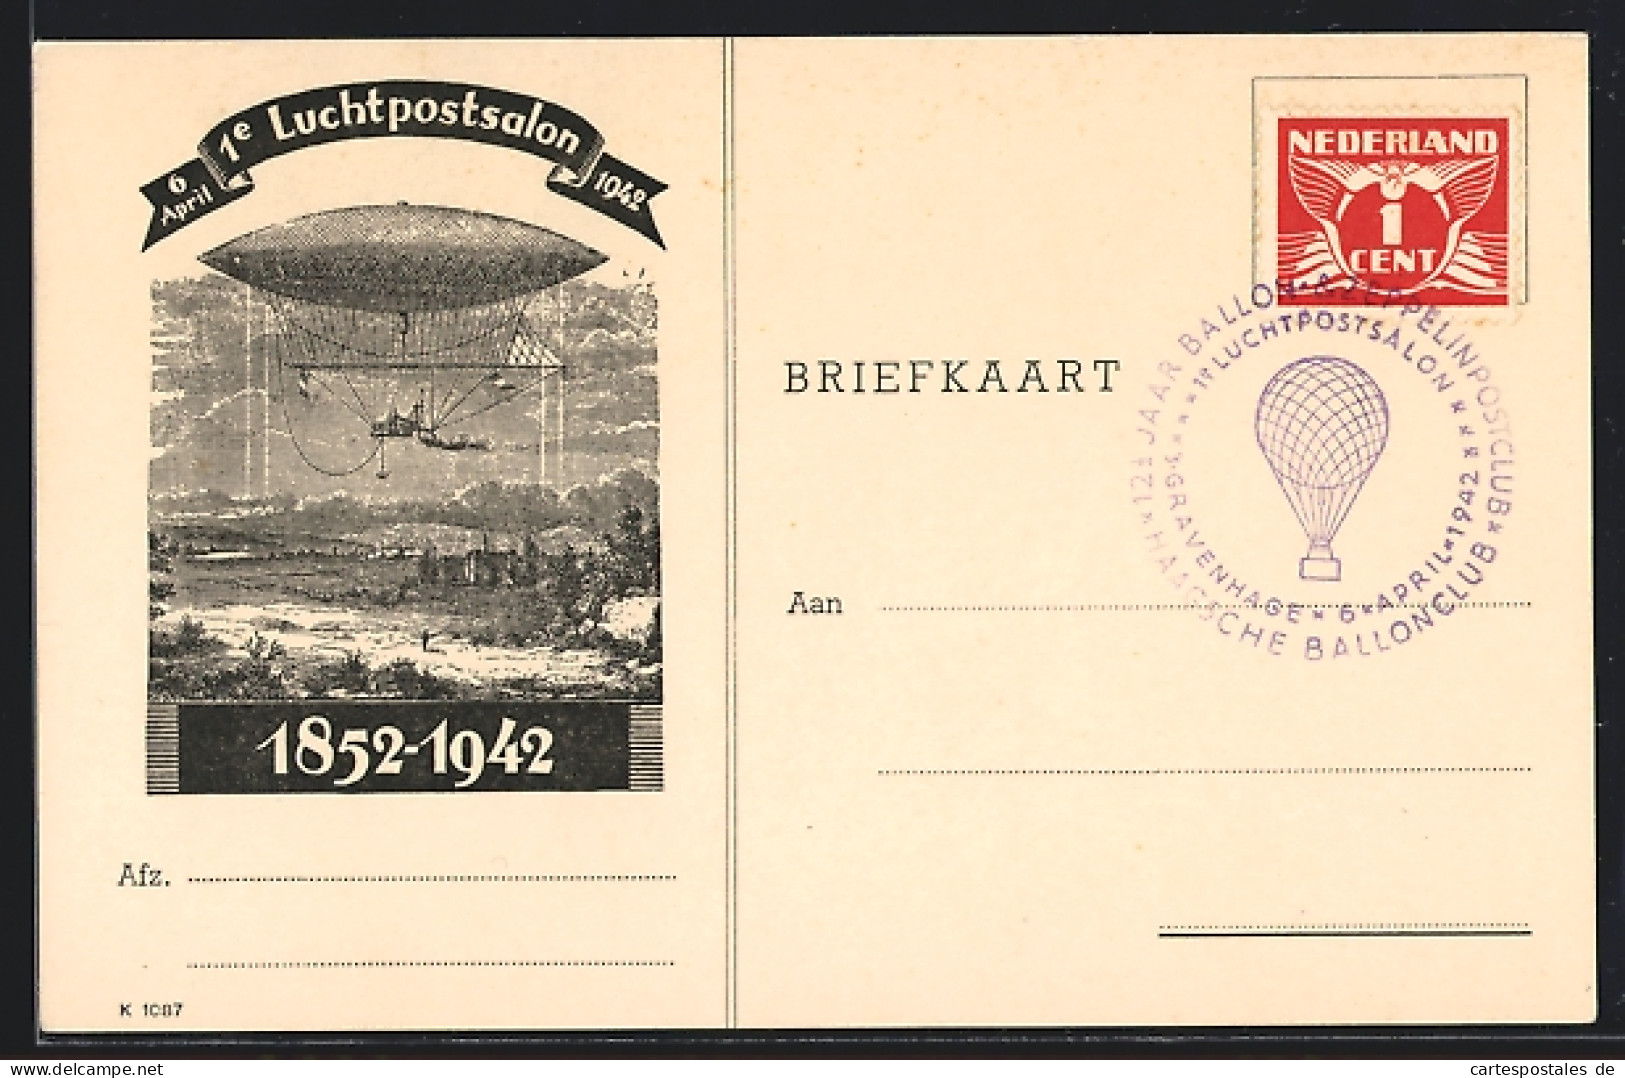 Künstler-AK Gravenhage, Erste Luchtpostsalon, April 1942, Zeppelin, 1852-1942  - Timbres (représentations)